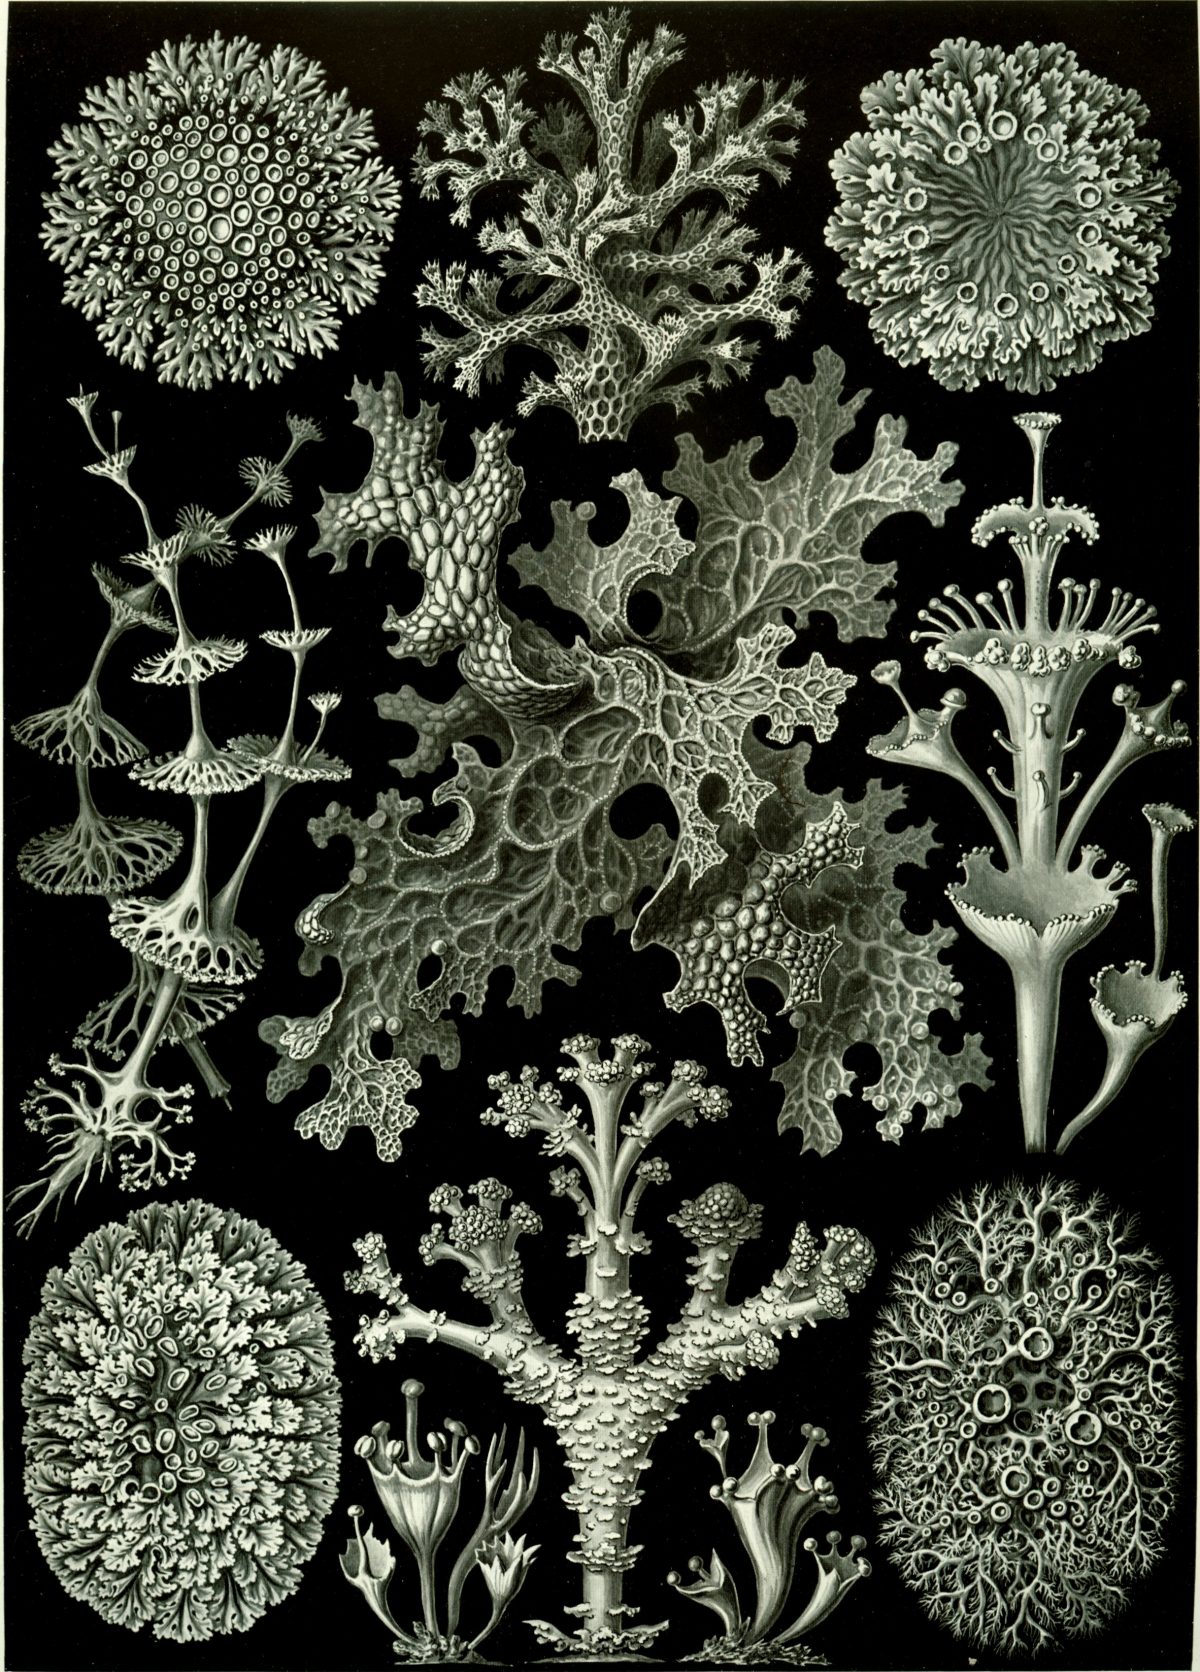 Ernst Haeckel - Kunstformen der Natur (1904), plate 83: Lichenes